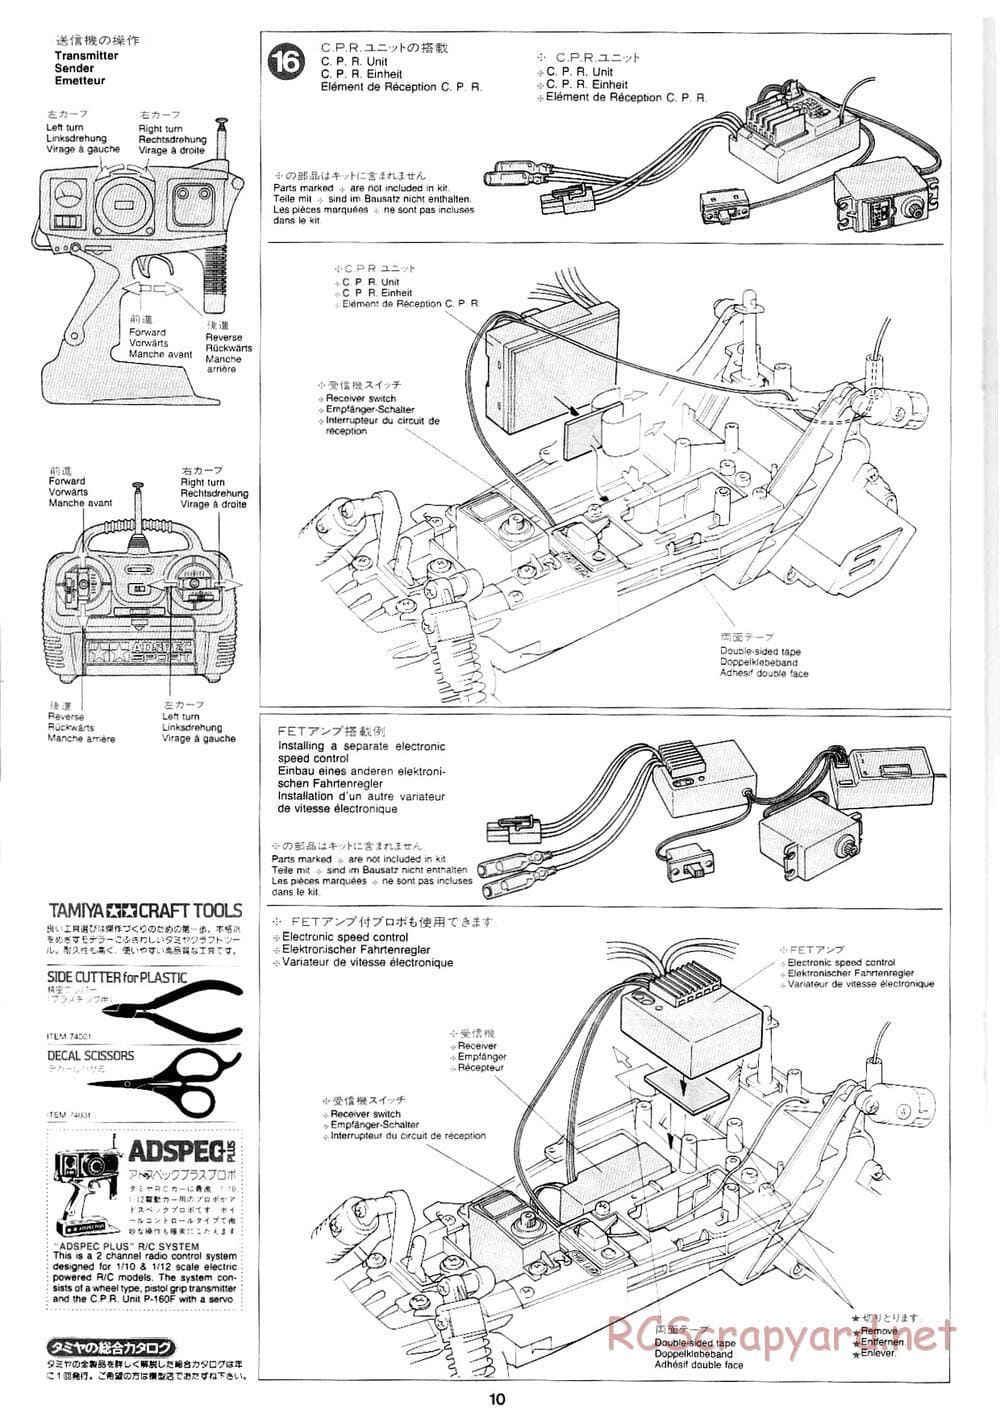 Tamiya - Mad Bull Chassis - Manual - Page 10